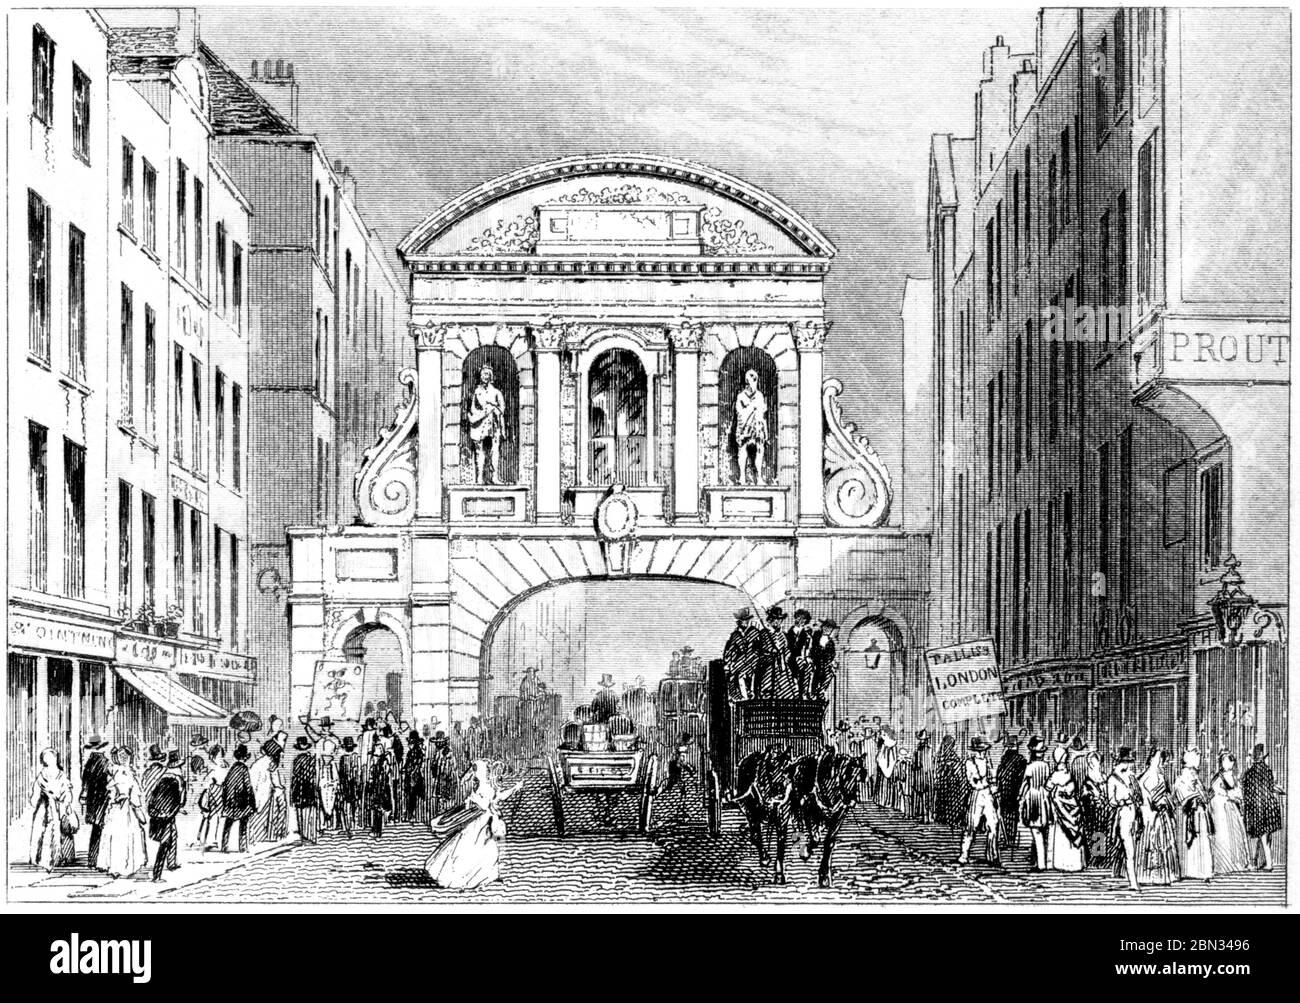 Ein Stich von Temple Bar London, gescannt in hoher Auflösung aus einem Buch, das 1851 gedruckt wurde. Dieses Bild ist frei von jegl. Copyright. Stockfoto